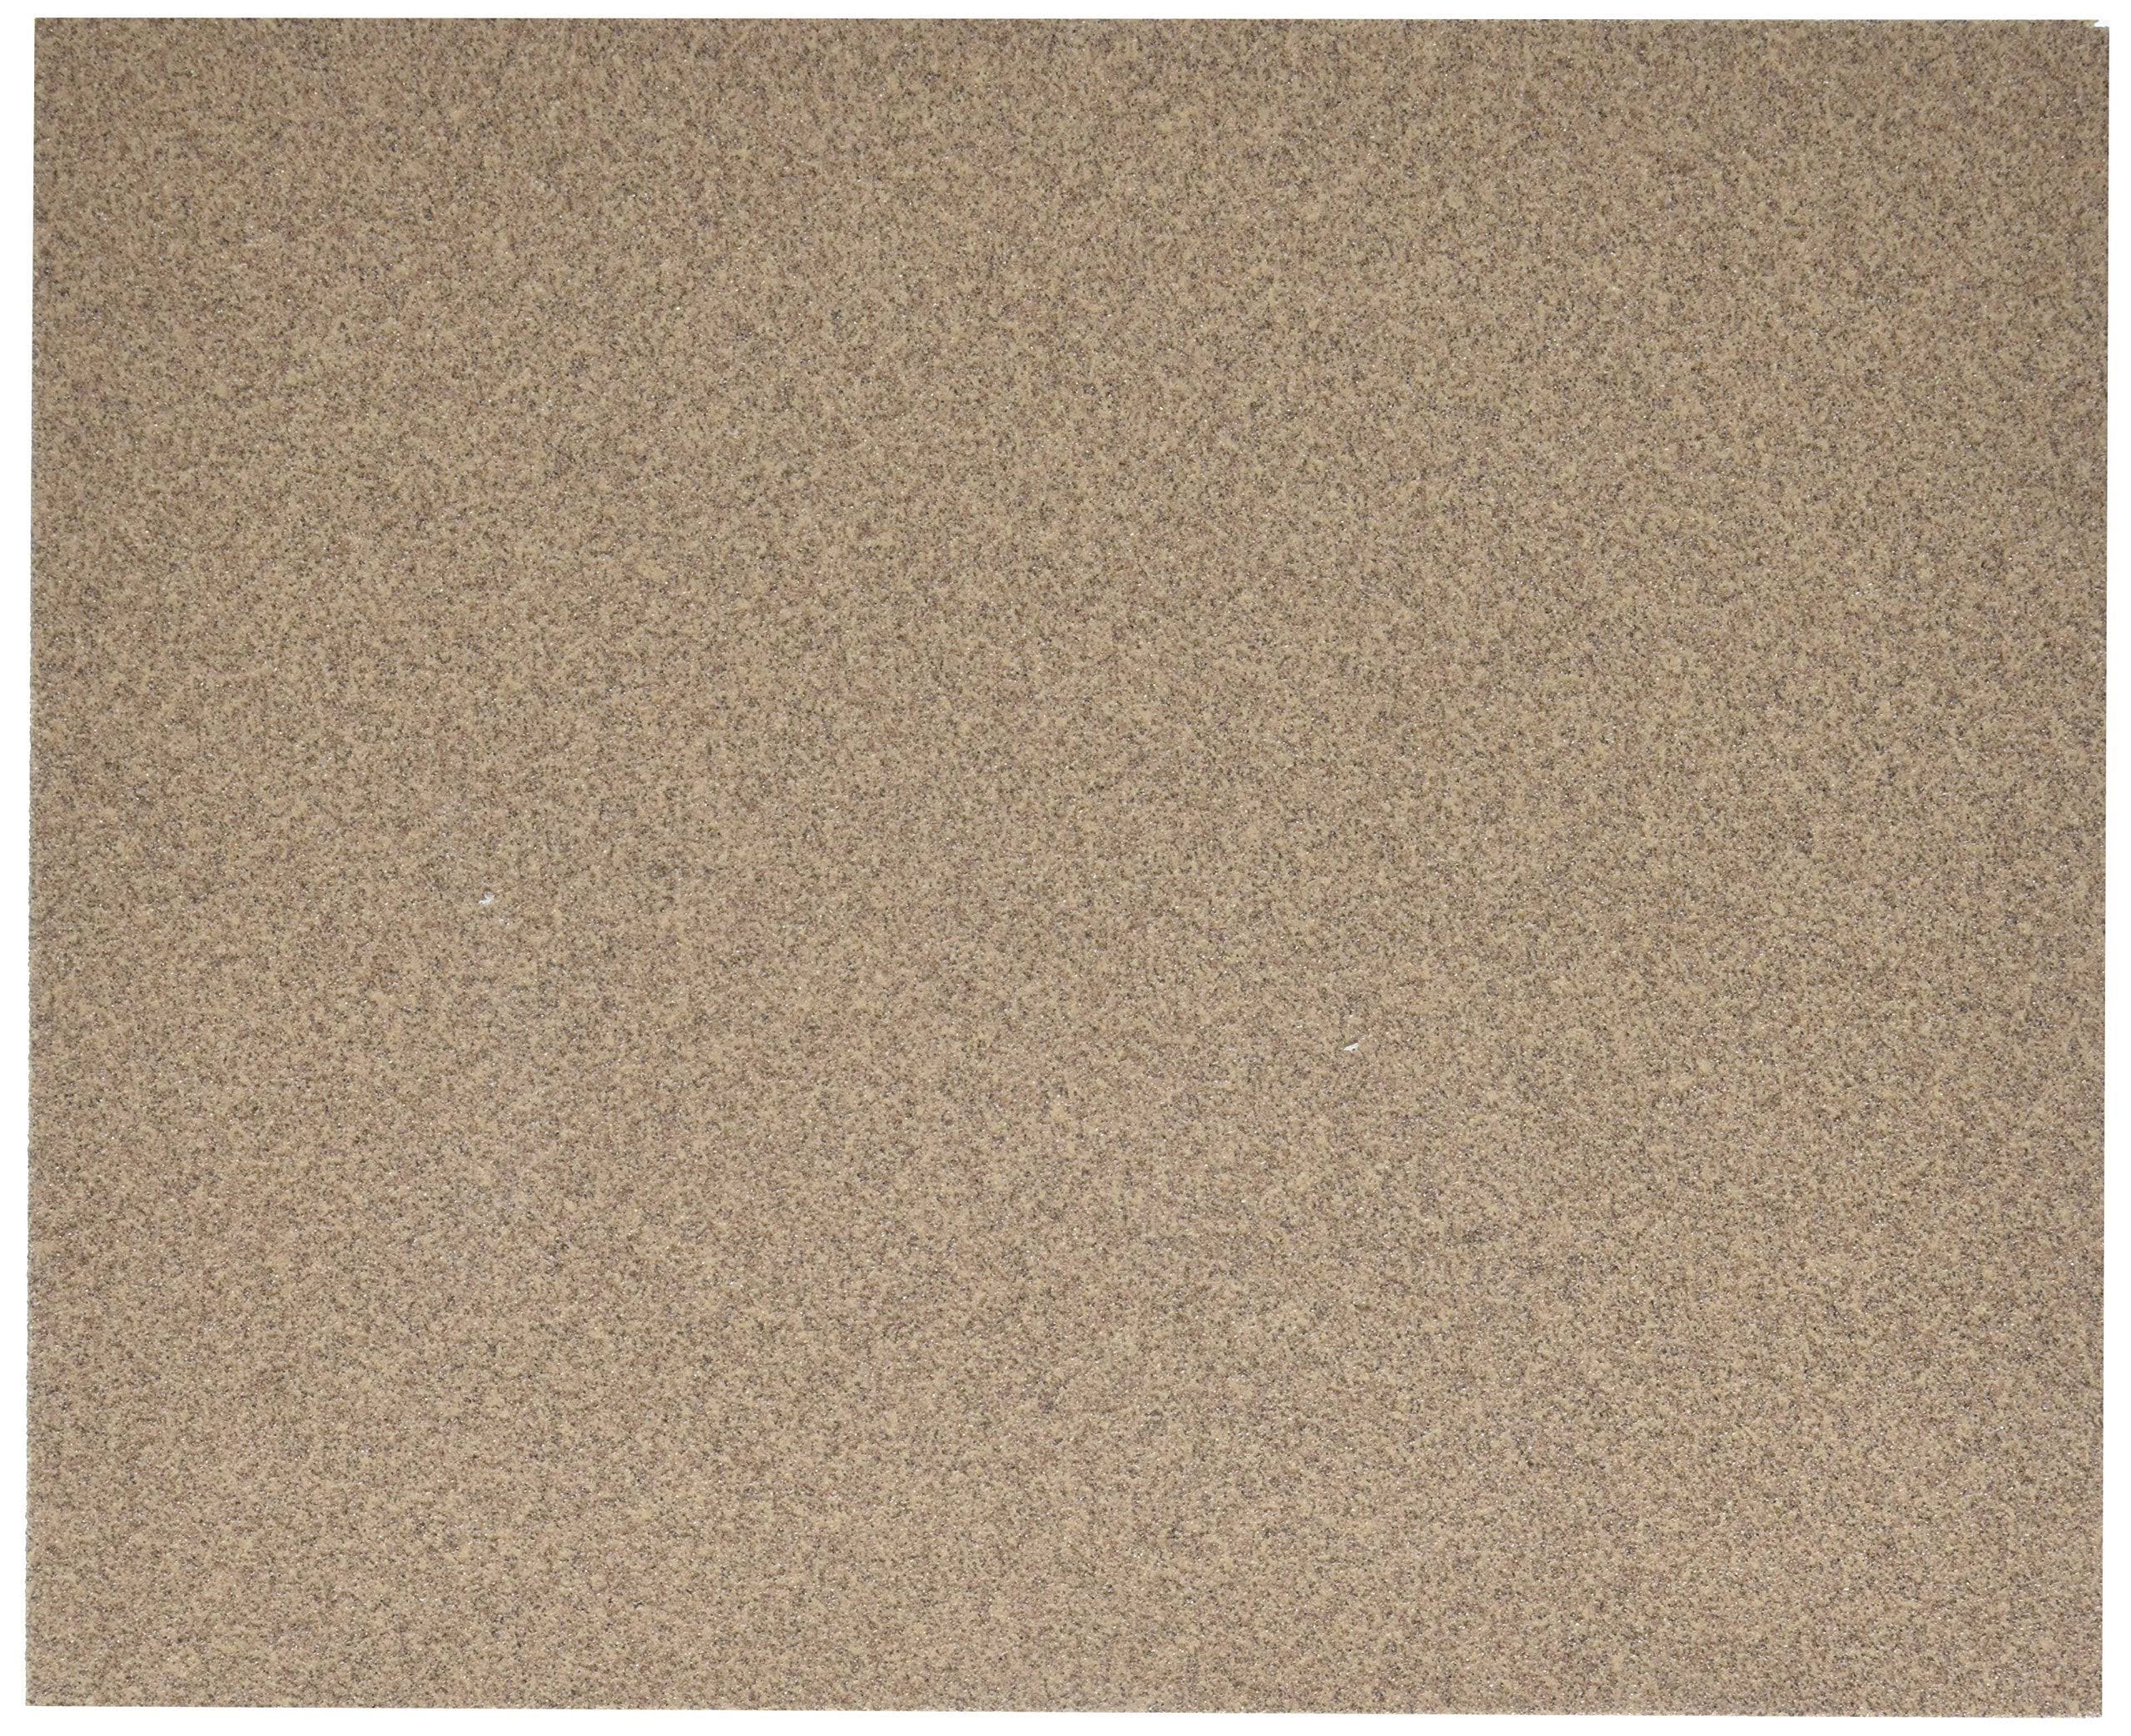 Ali Industries 4210 Aluminum Oxide Sanding Sheets - 9" x 11", 80c Grit